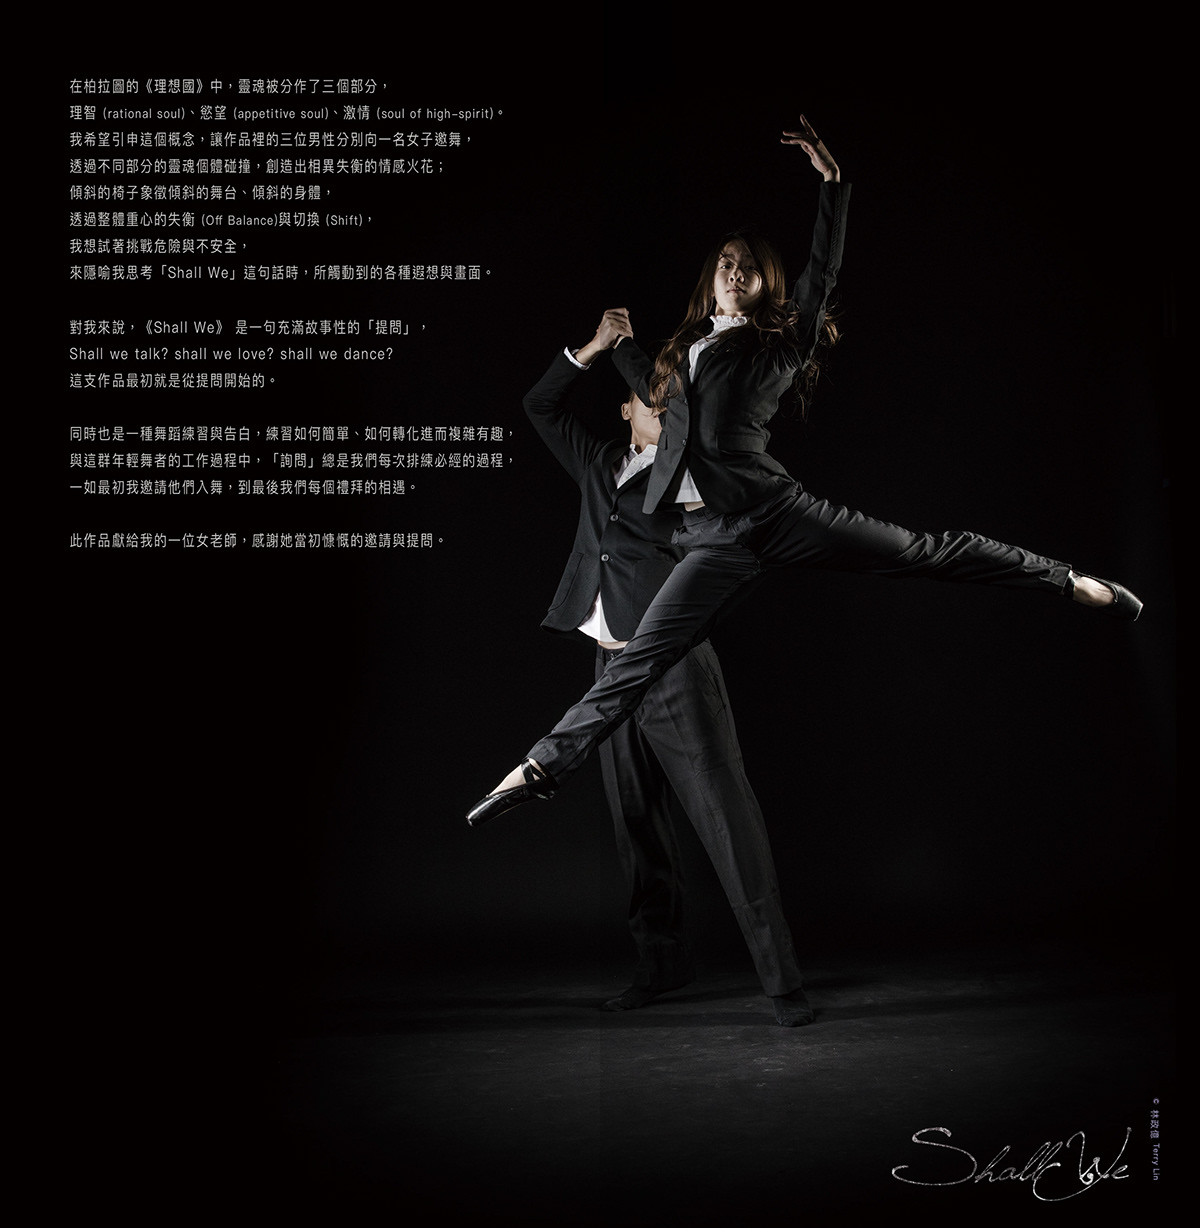 創作芭蕾 文宣設計 平面設計 舞蹈文宣 主視覺設計 typography   graphic design  林誼璇 Yi-Syuan Lin 表演藝術